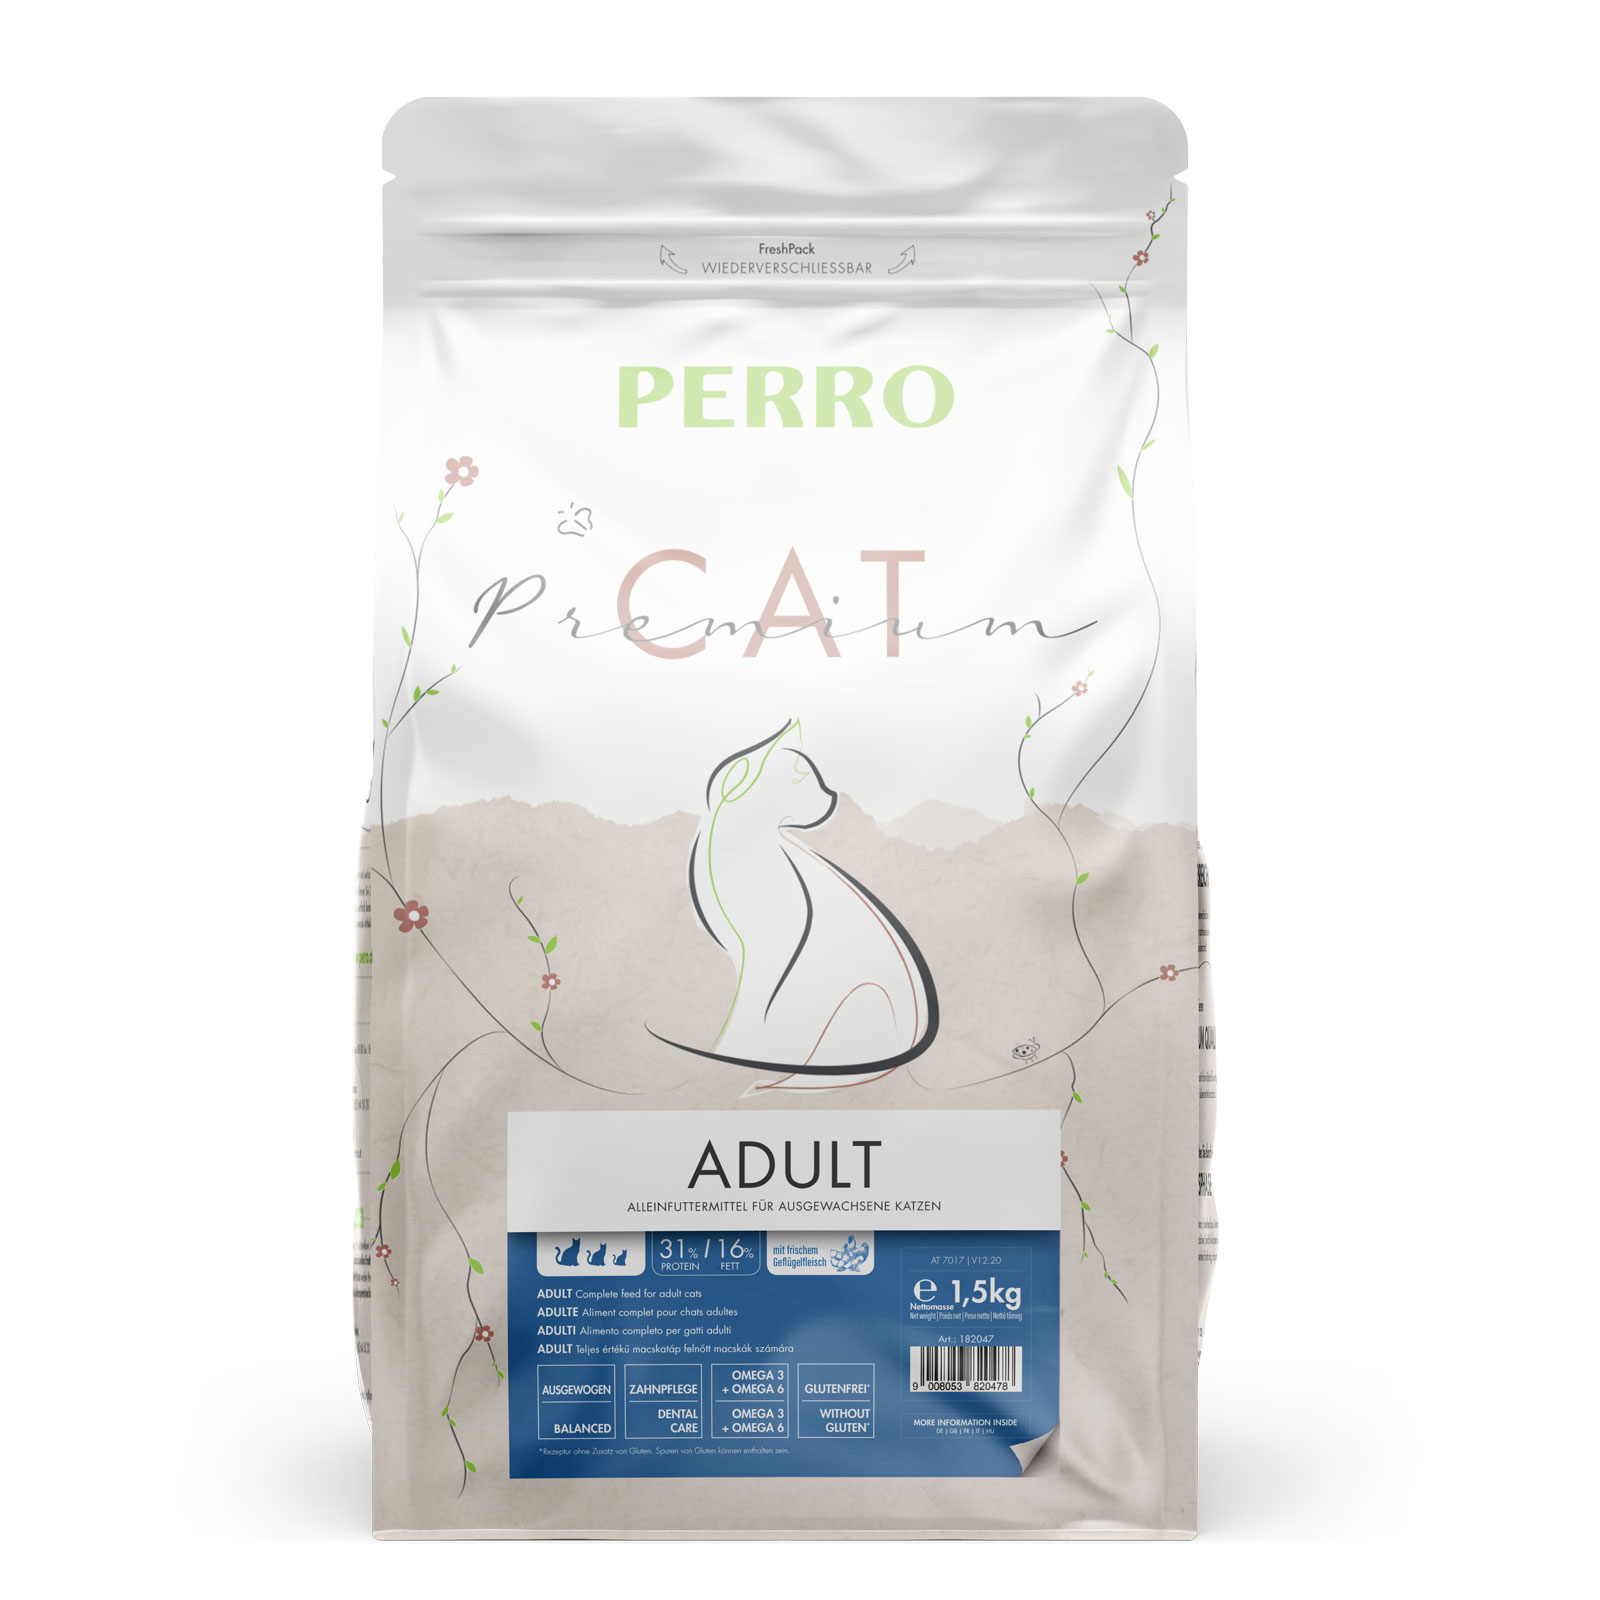 PERRO Cat Premium Adult